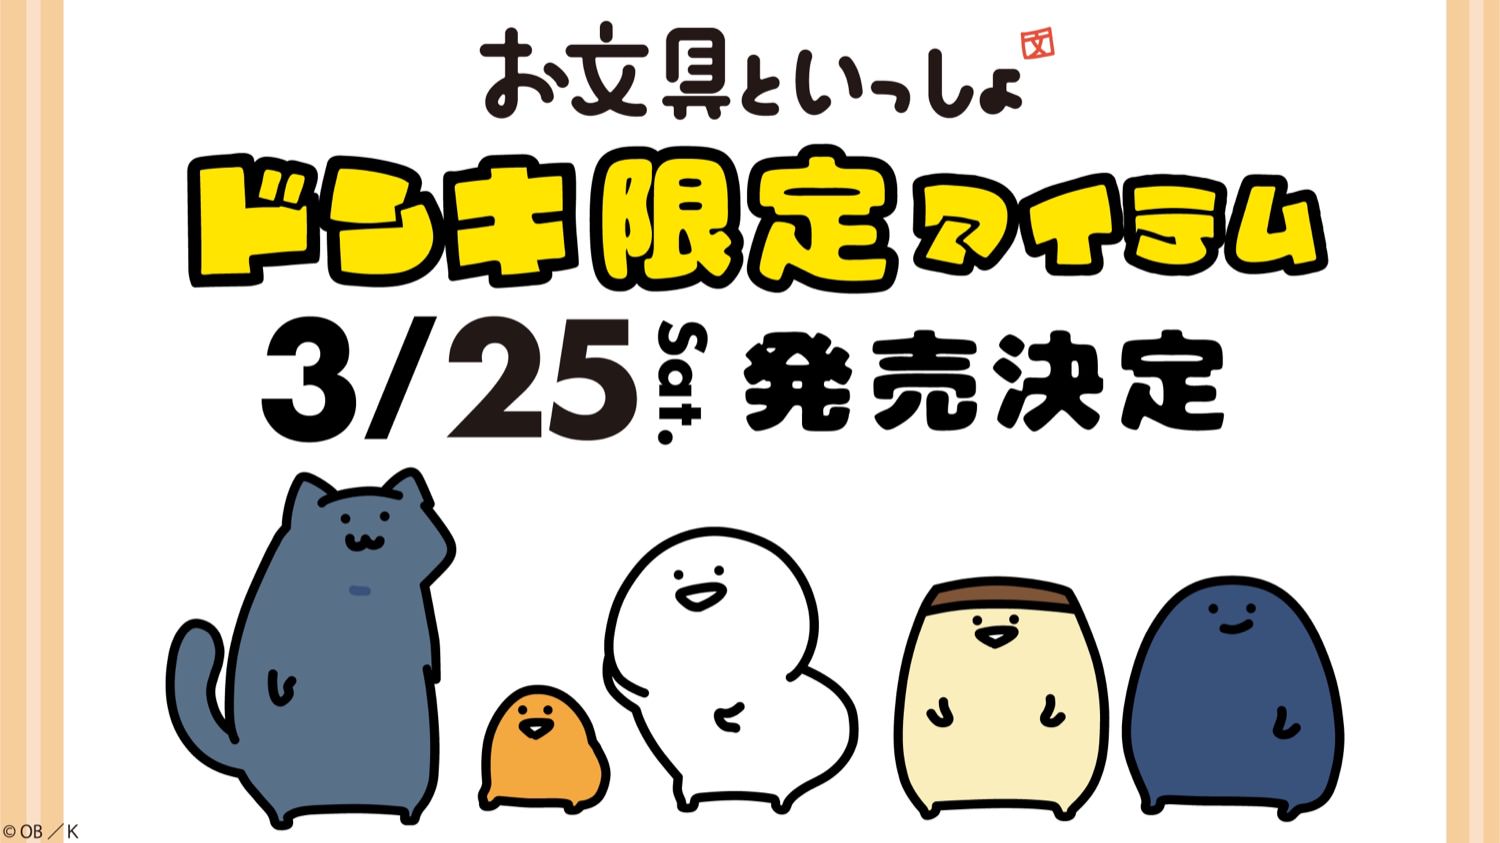 お文具といっしょ × ドンキホーテ全国 3月25日よりコラボグッズ発売!